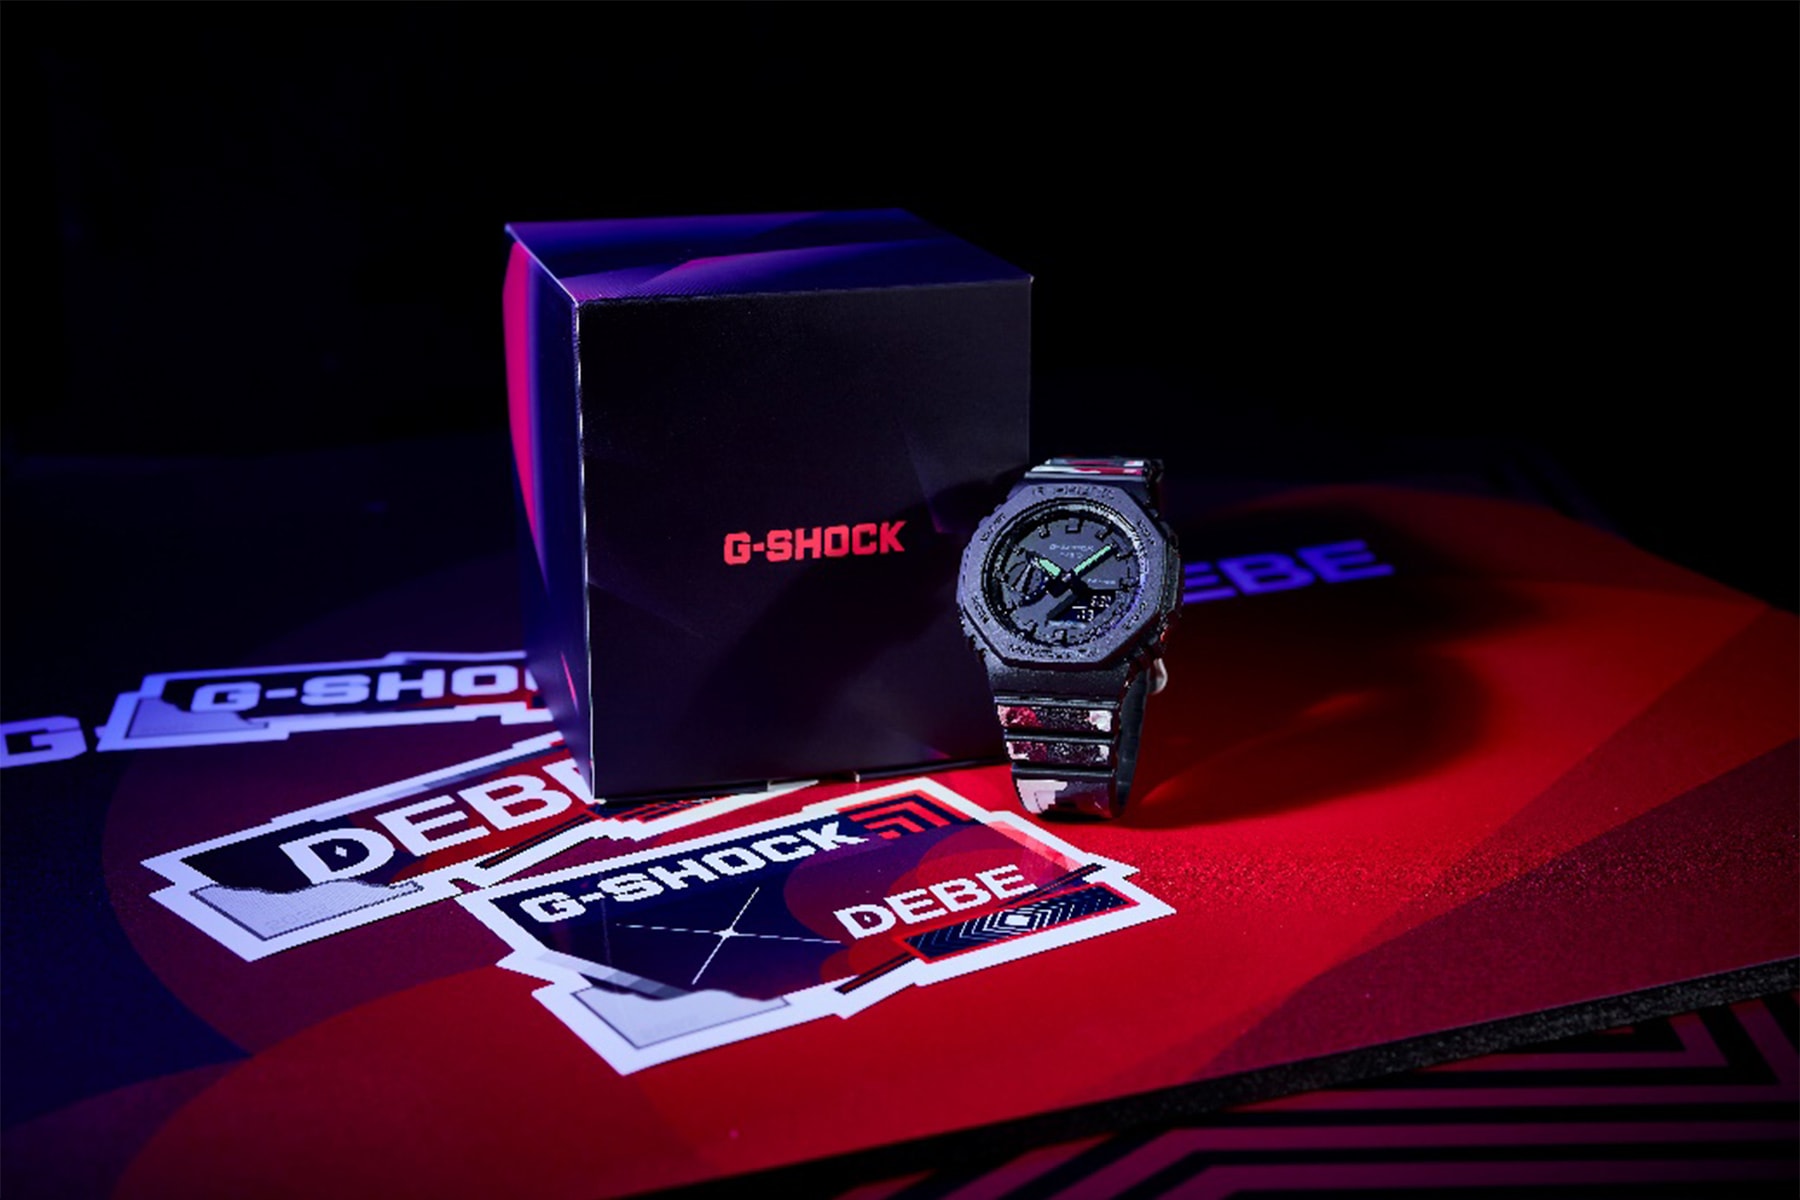 G-Shock 攜手台灣塗鴉藝術家 DEBE 打造聯名錶款與展覽